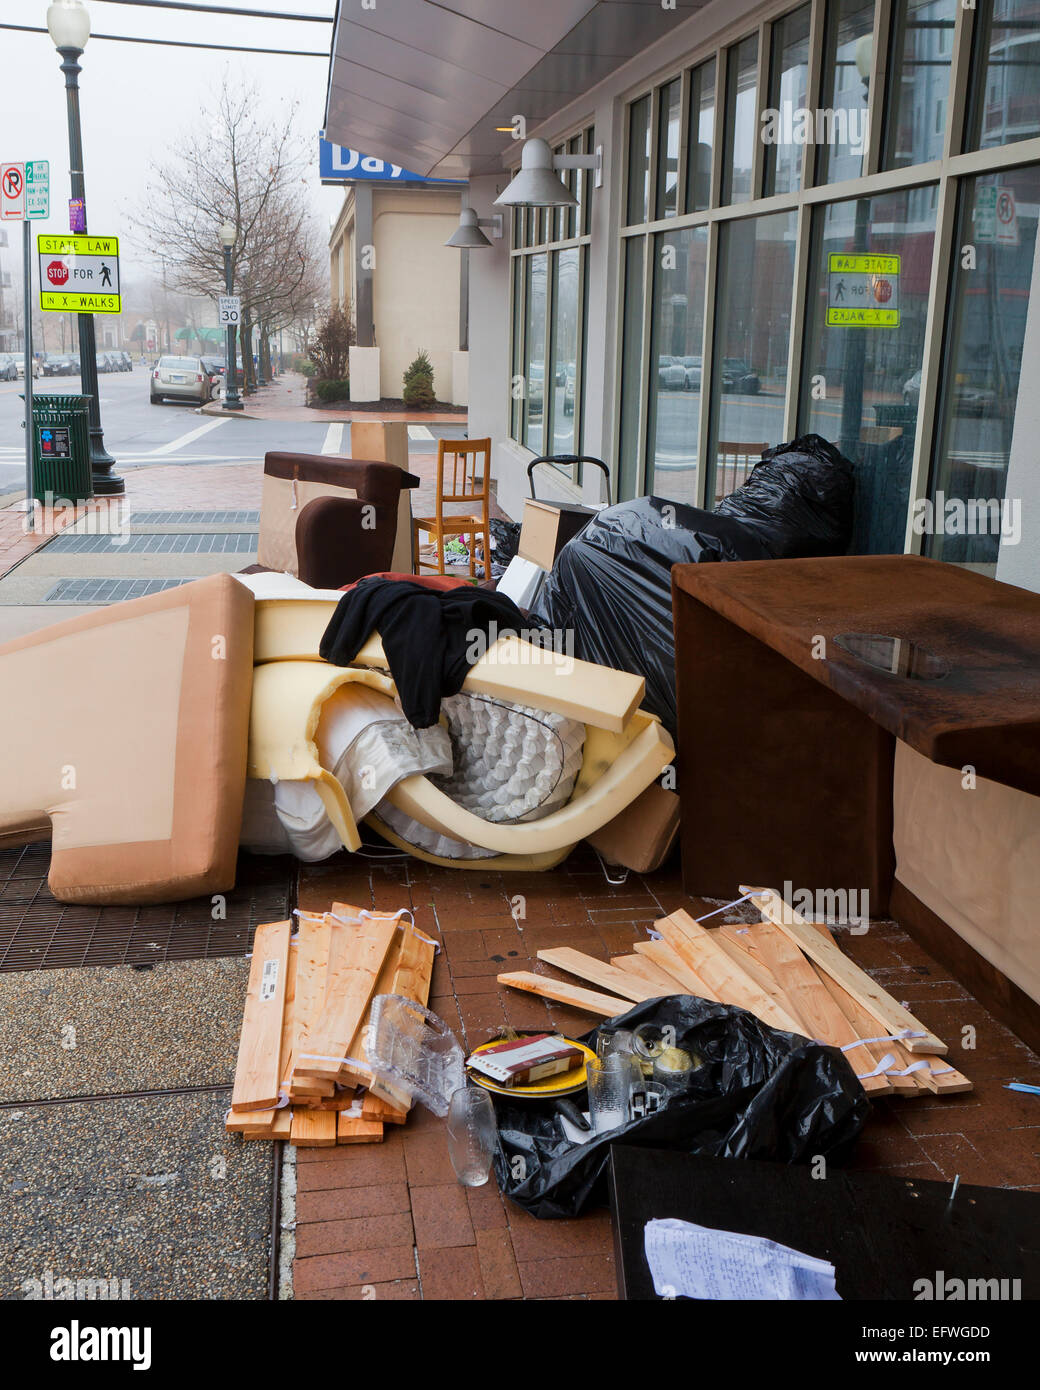 Mobilier de locataire évincé sur trottoir d'immeuble - USA Banque D'Images